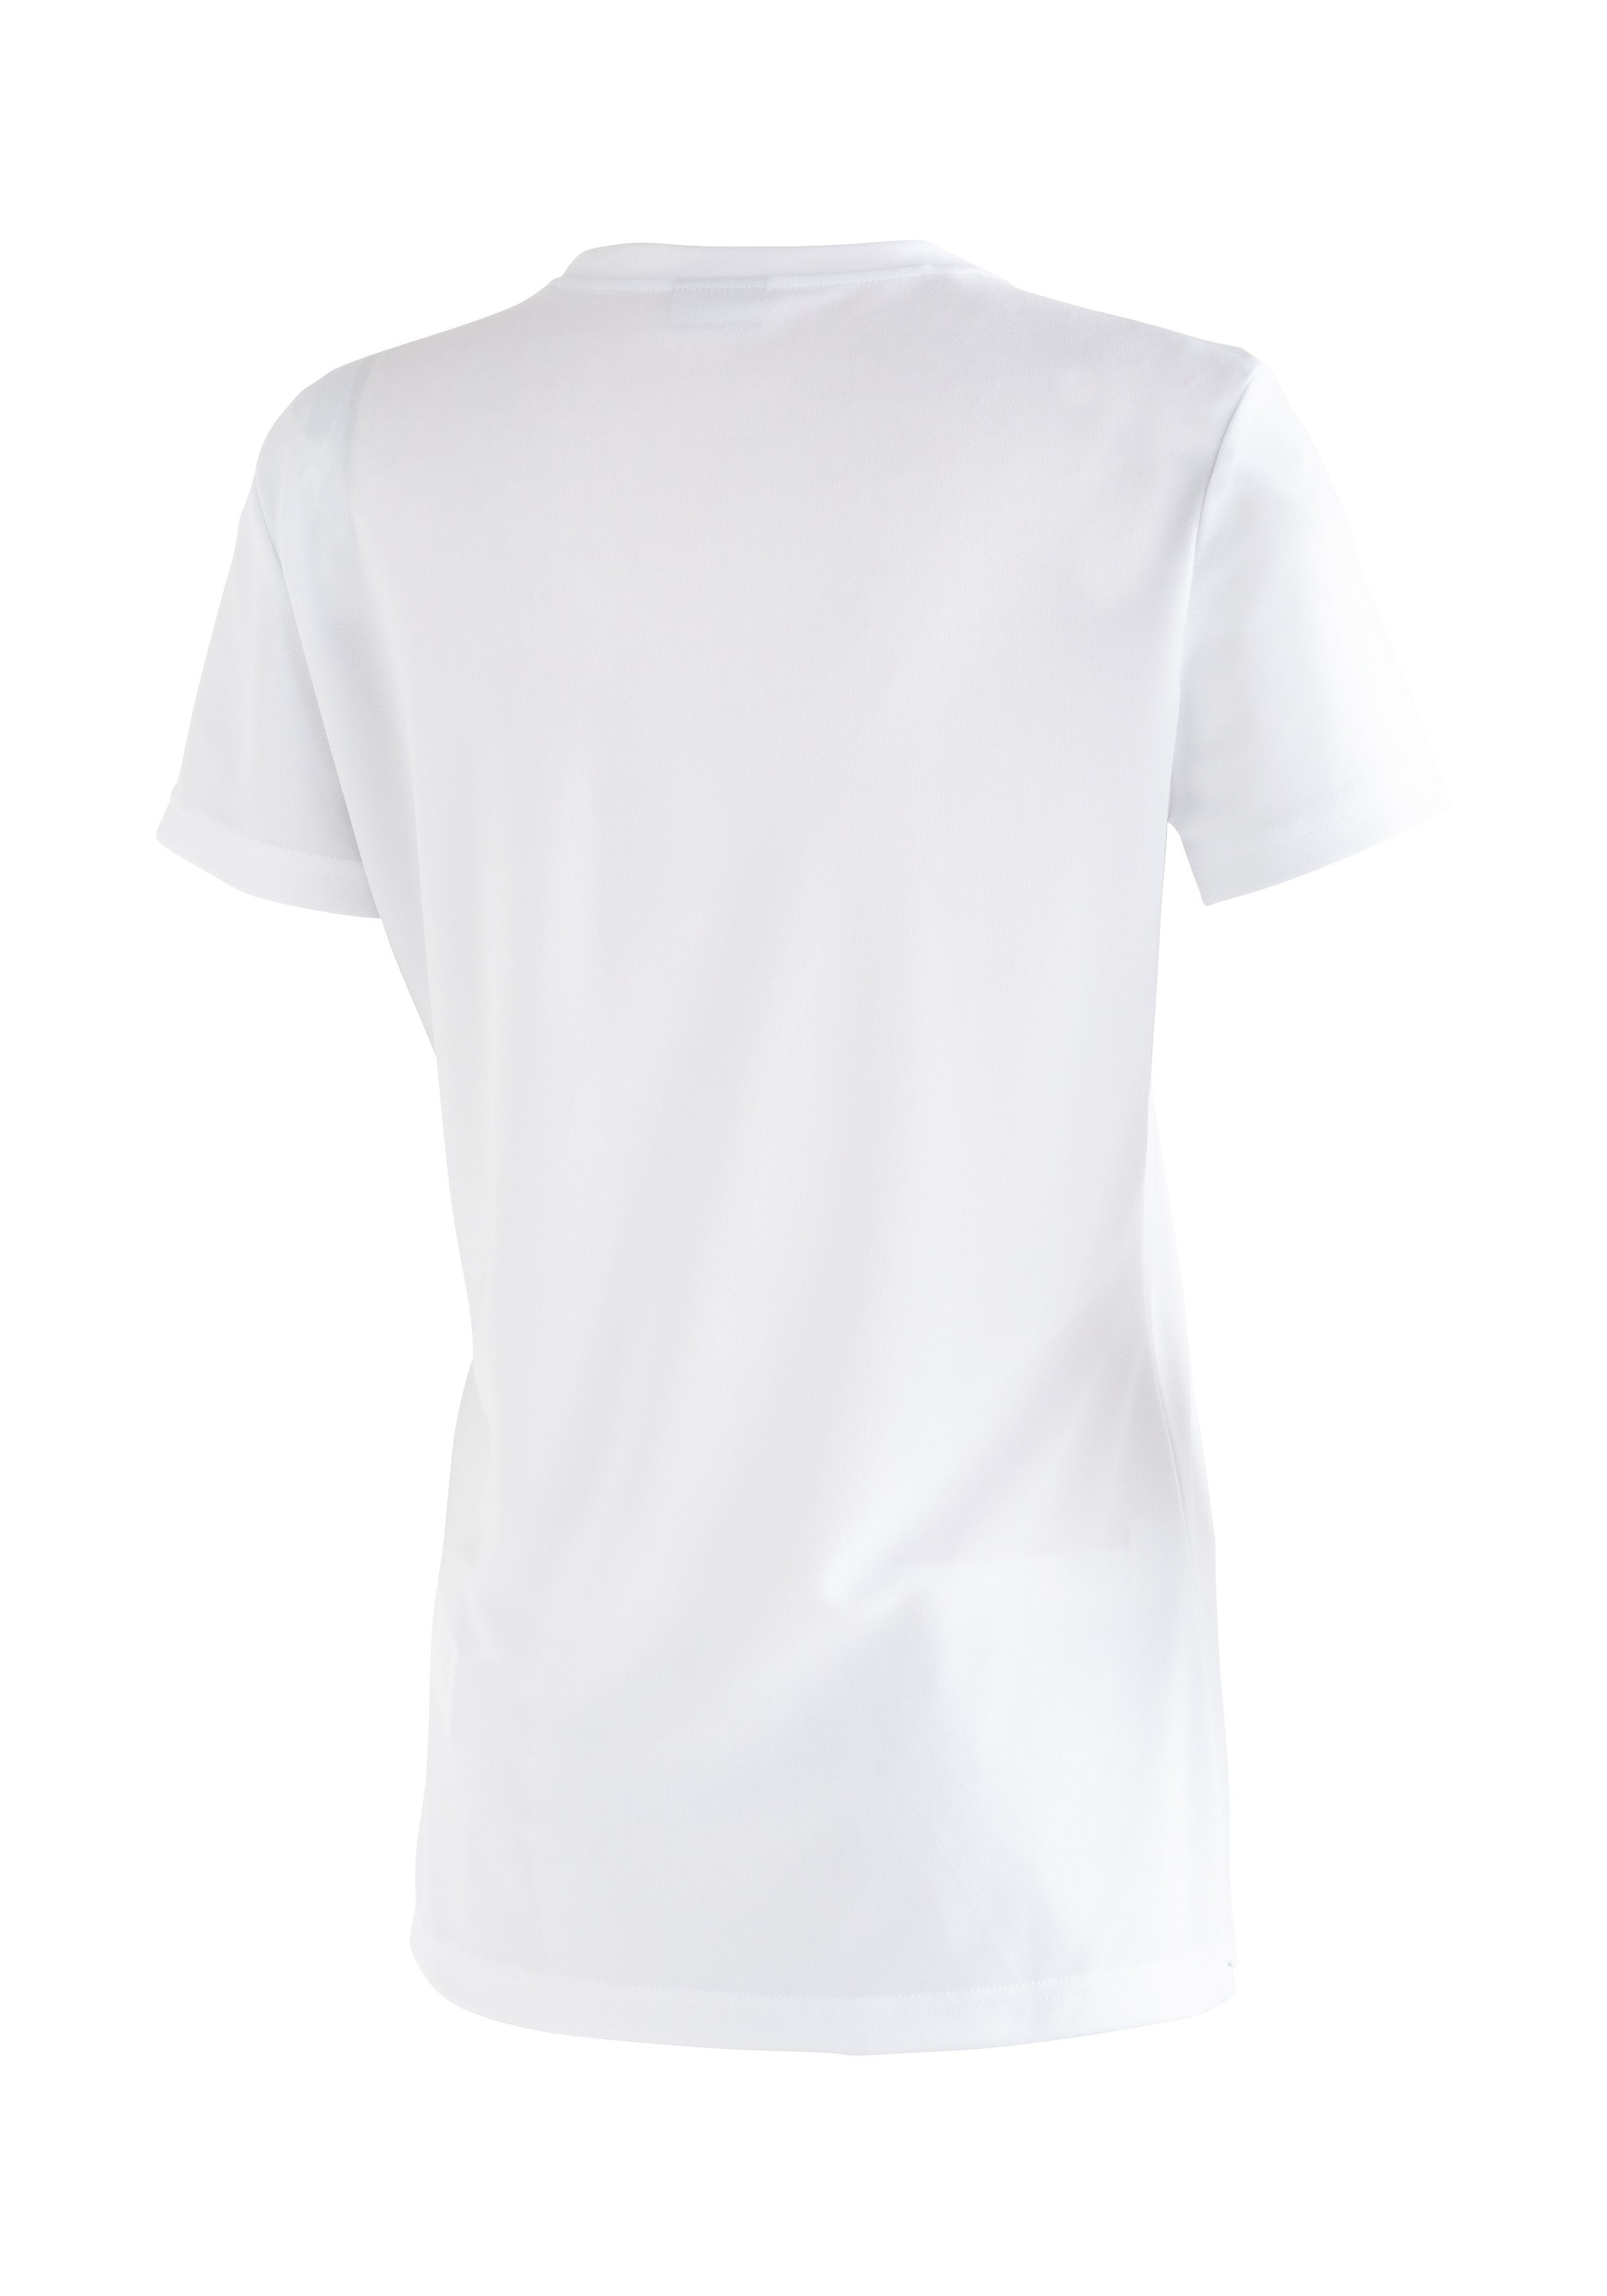 Funktional Freizeit Sports Print Maier Waltraut für T-Shirt und Funktional vielseitiges Passformstabilität, T-Shirt mit vielseitiges Funktionsshirt hoher Wanderungen